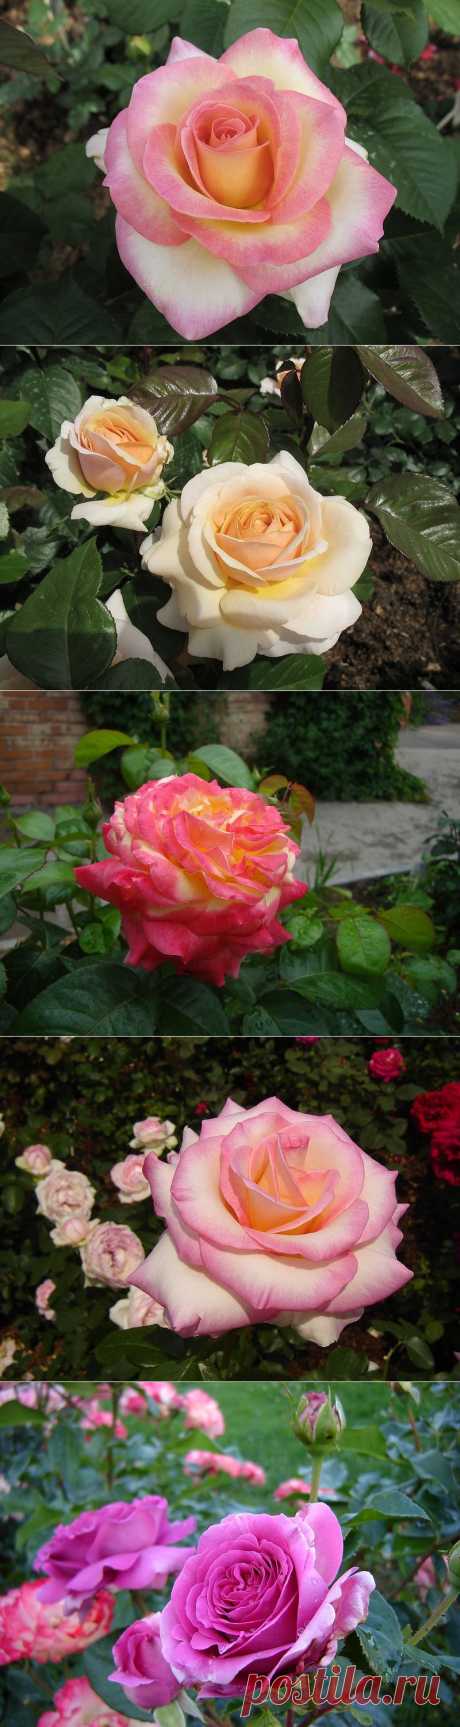 Все великолепие розы:))) | Самоцветик